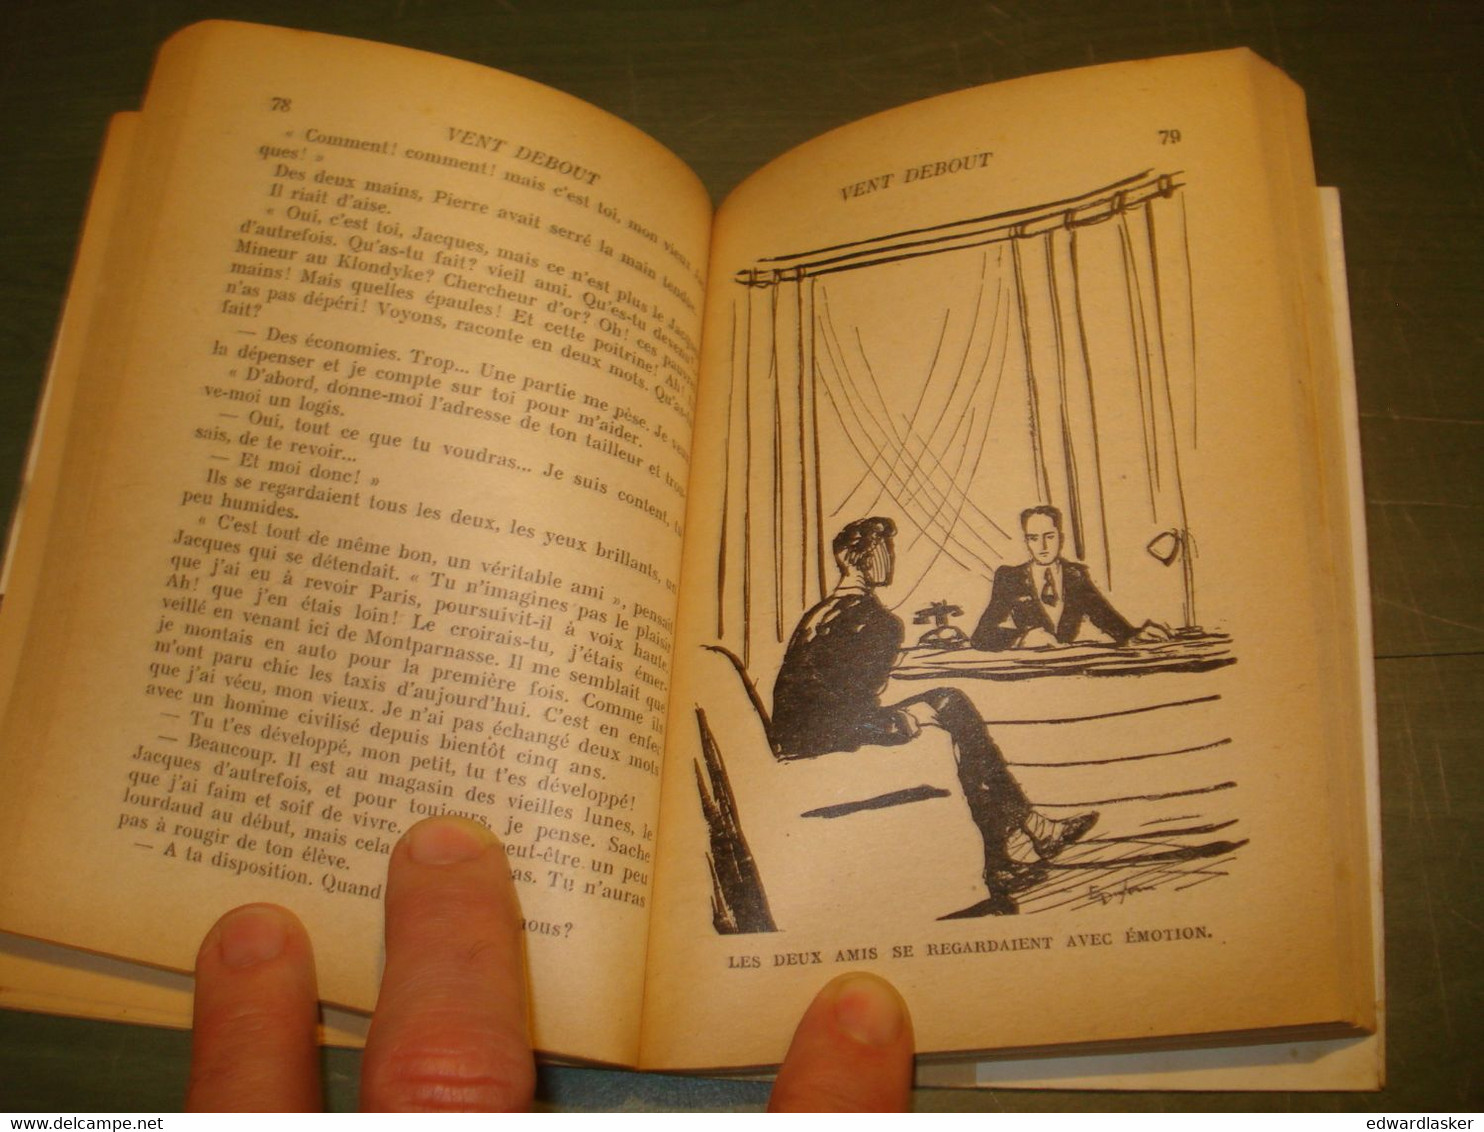 BIBLIOTHEQUE De La JEUNESSE : Vent Debout /Jean D'Agraives - Jaquette 1951 - Bibliothèque De La Jeunesse